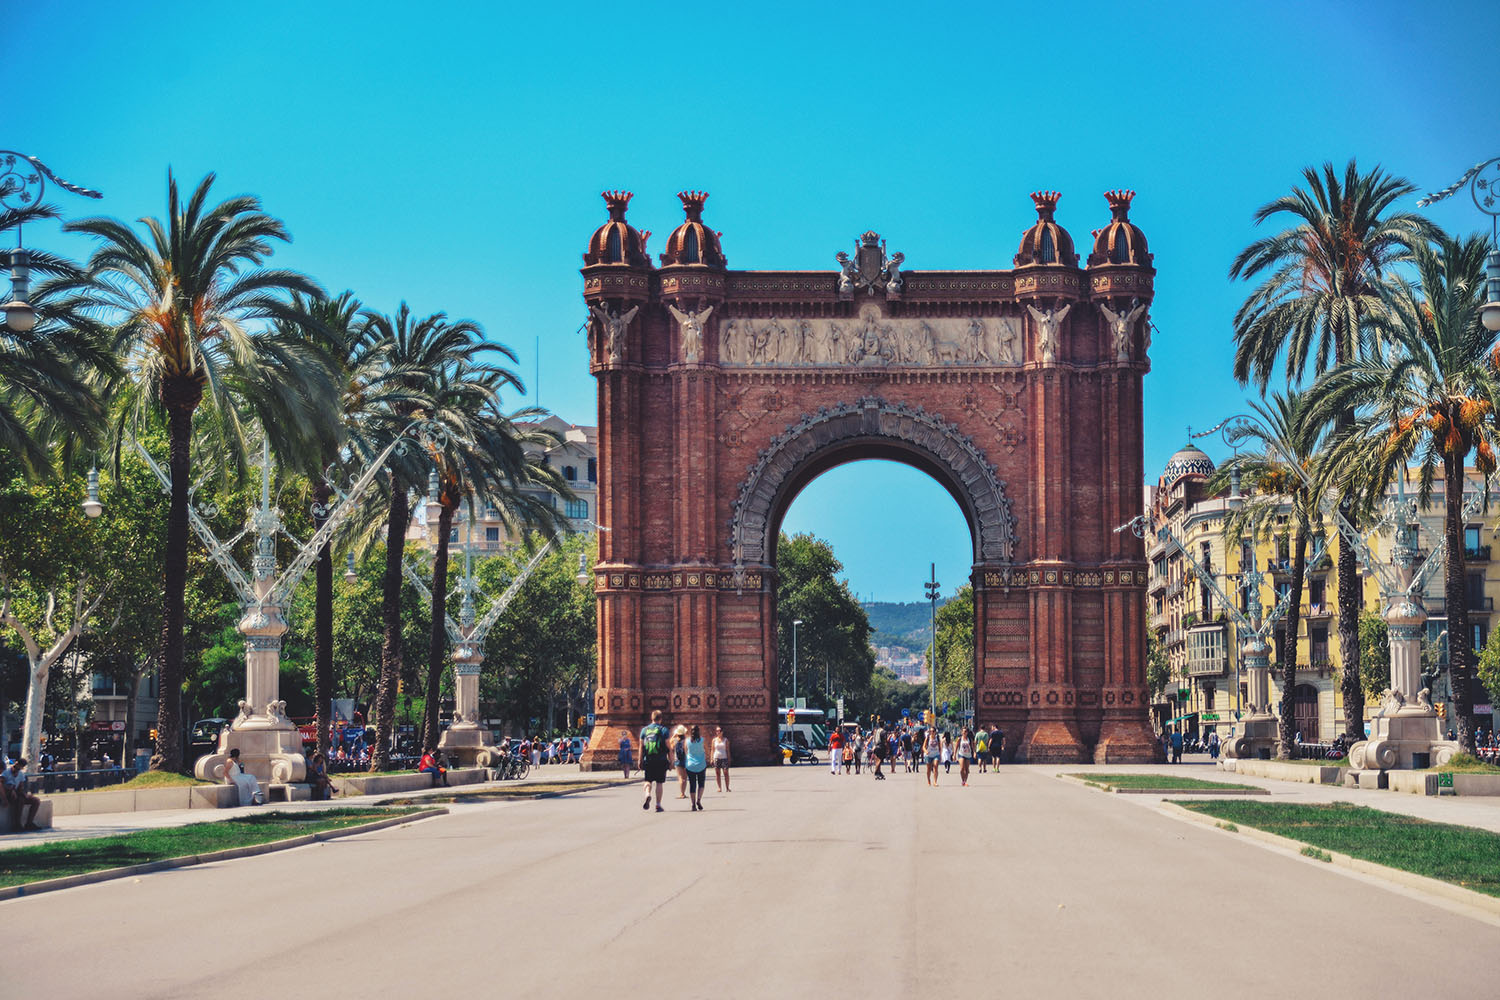 Arc de Triomf in Barcelona